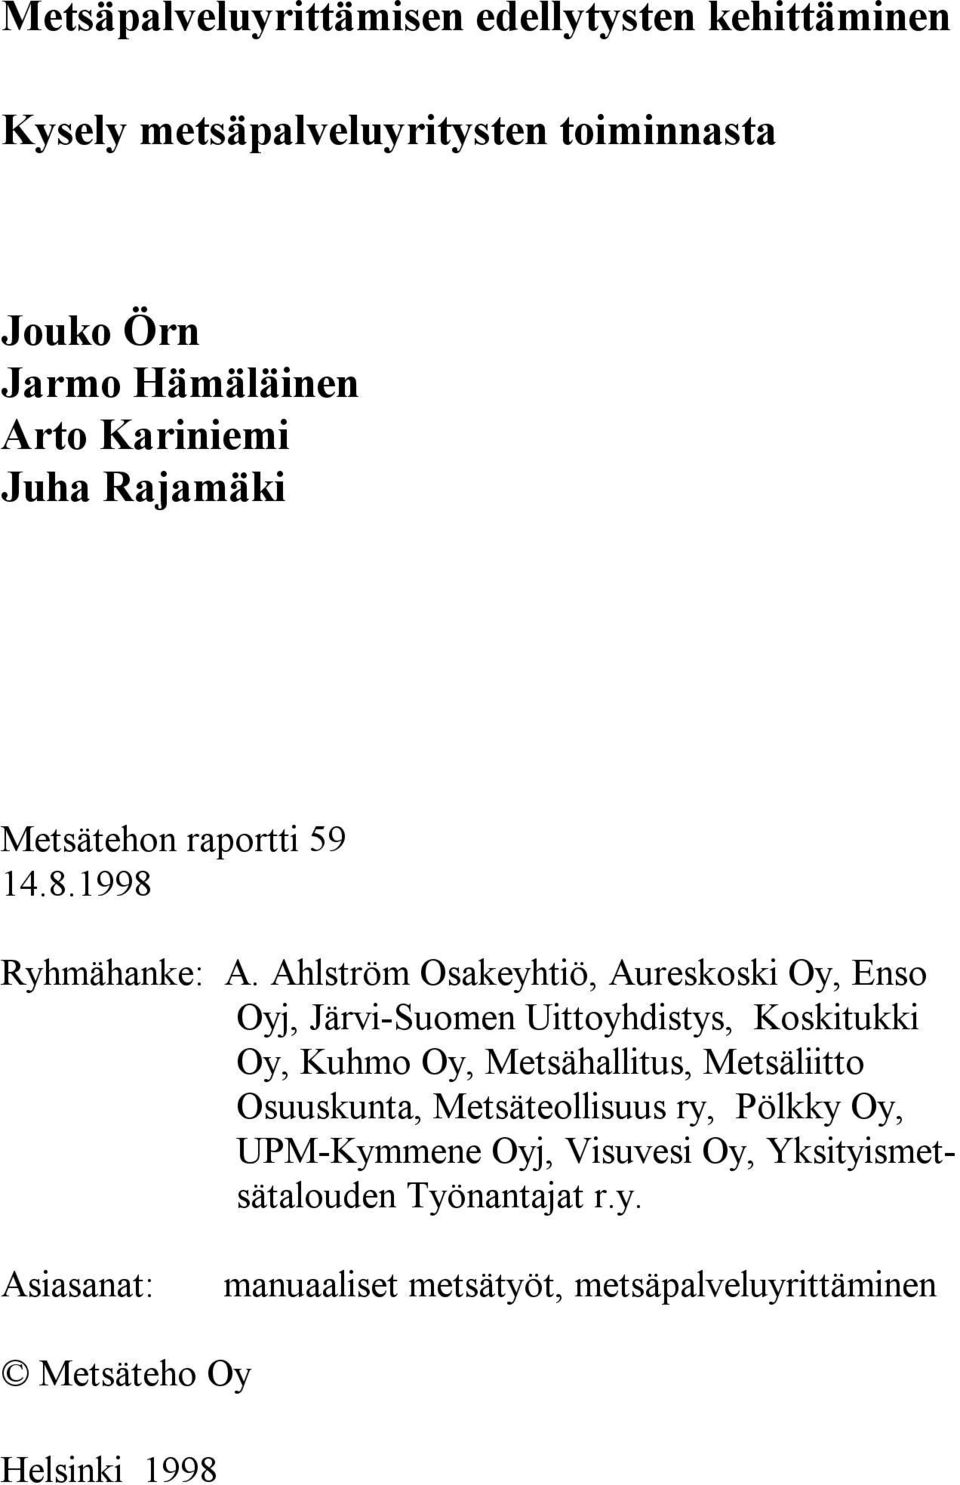 Ahlström Osakeyhtiö, Aureskoski Oy, Enso Oyj, Järvi-Suomen Uittoyhdistys, Koskitukki Oy, Kuhmo Oy, Metsähallitus, Metsäliitto